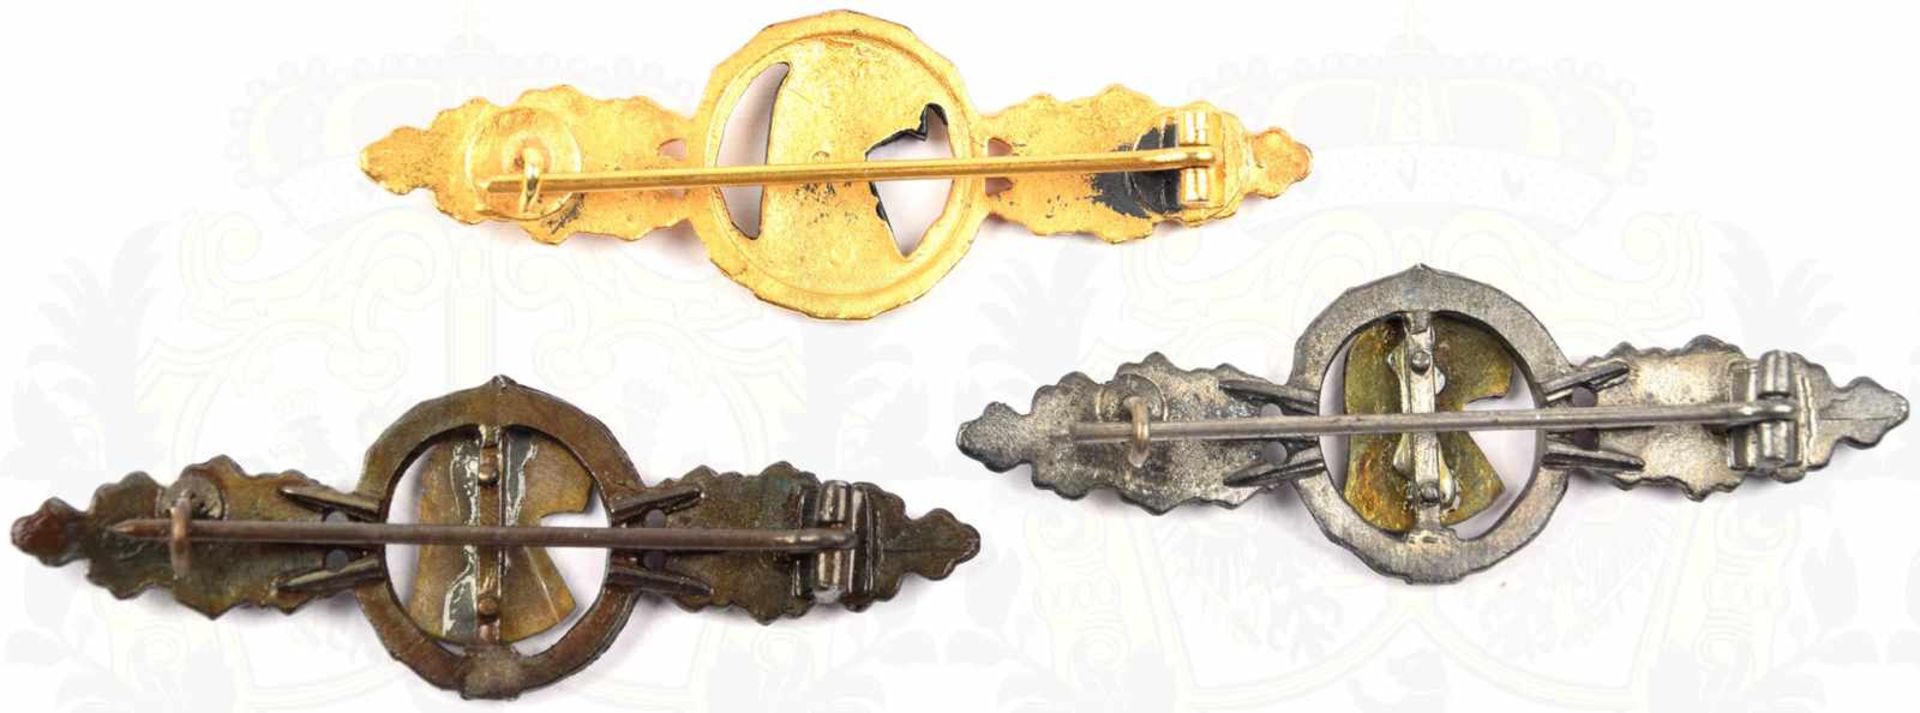 3 FRONTFLUGSPANGEN FÜR AUFKLÄRER, Sammleranfertigungen, in Bronze/in Silber/in Gold, Weißmetall/ - Bild 2 aus 2